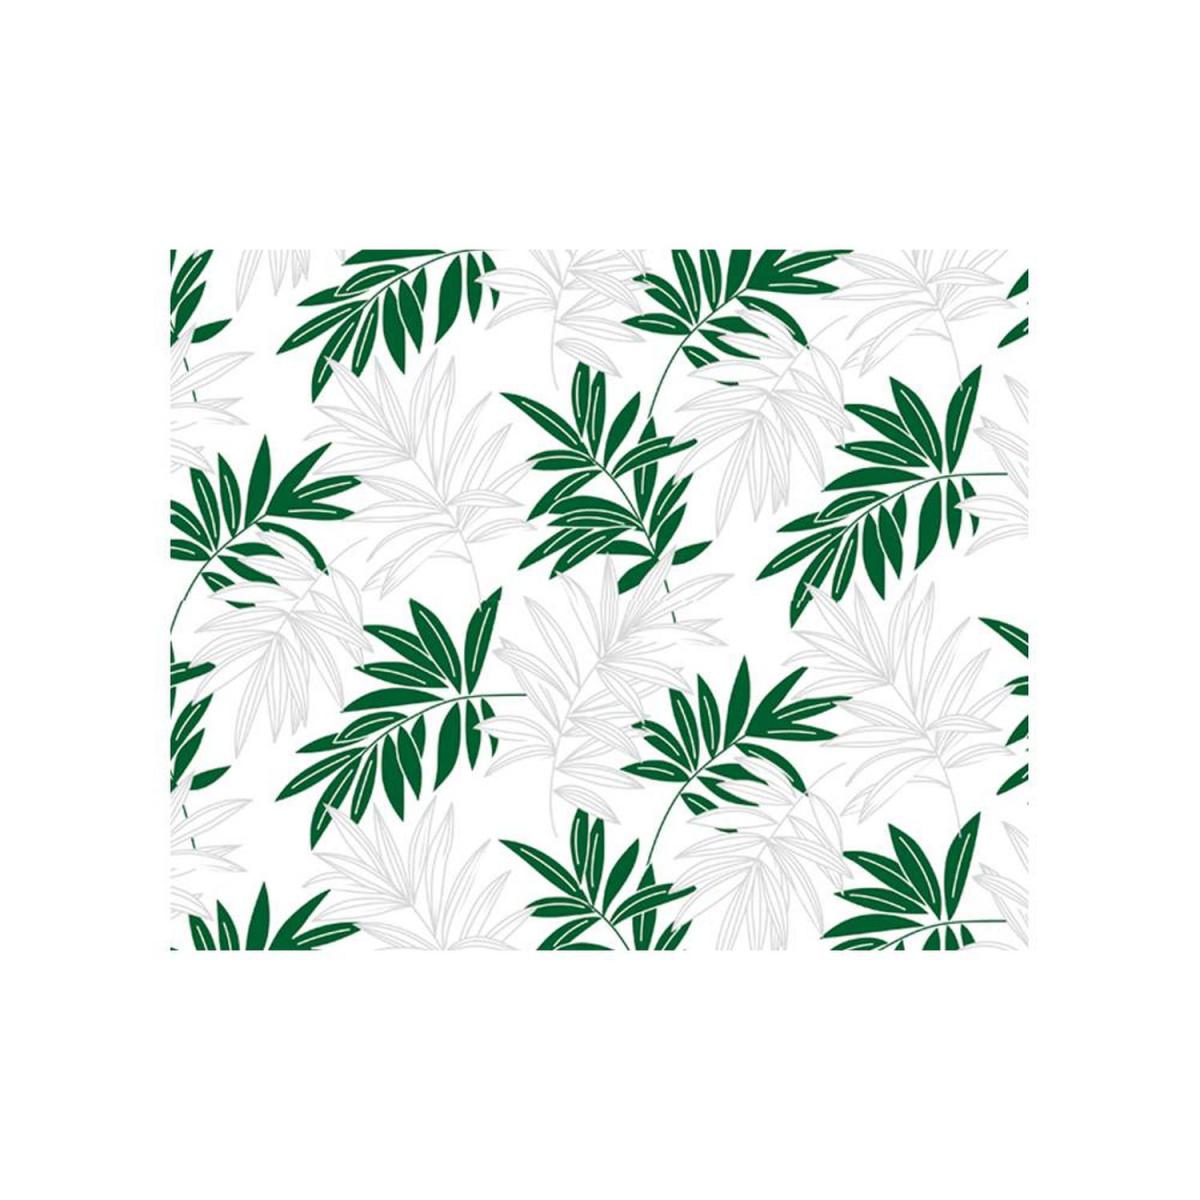 Sudtrading - Adhésif décoratif motif feuilles vertes - 150 x 45cm - Papier peint